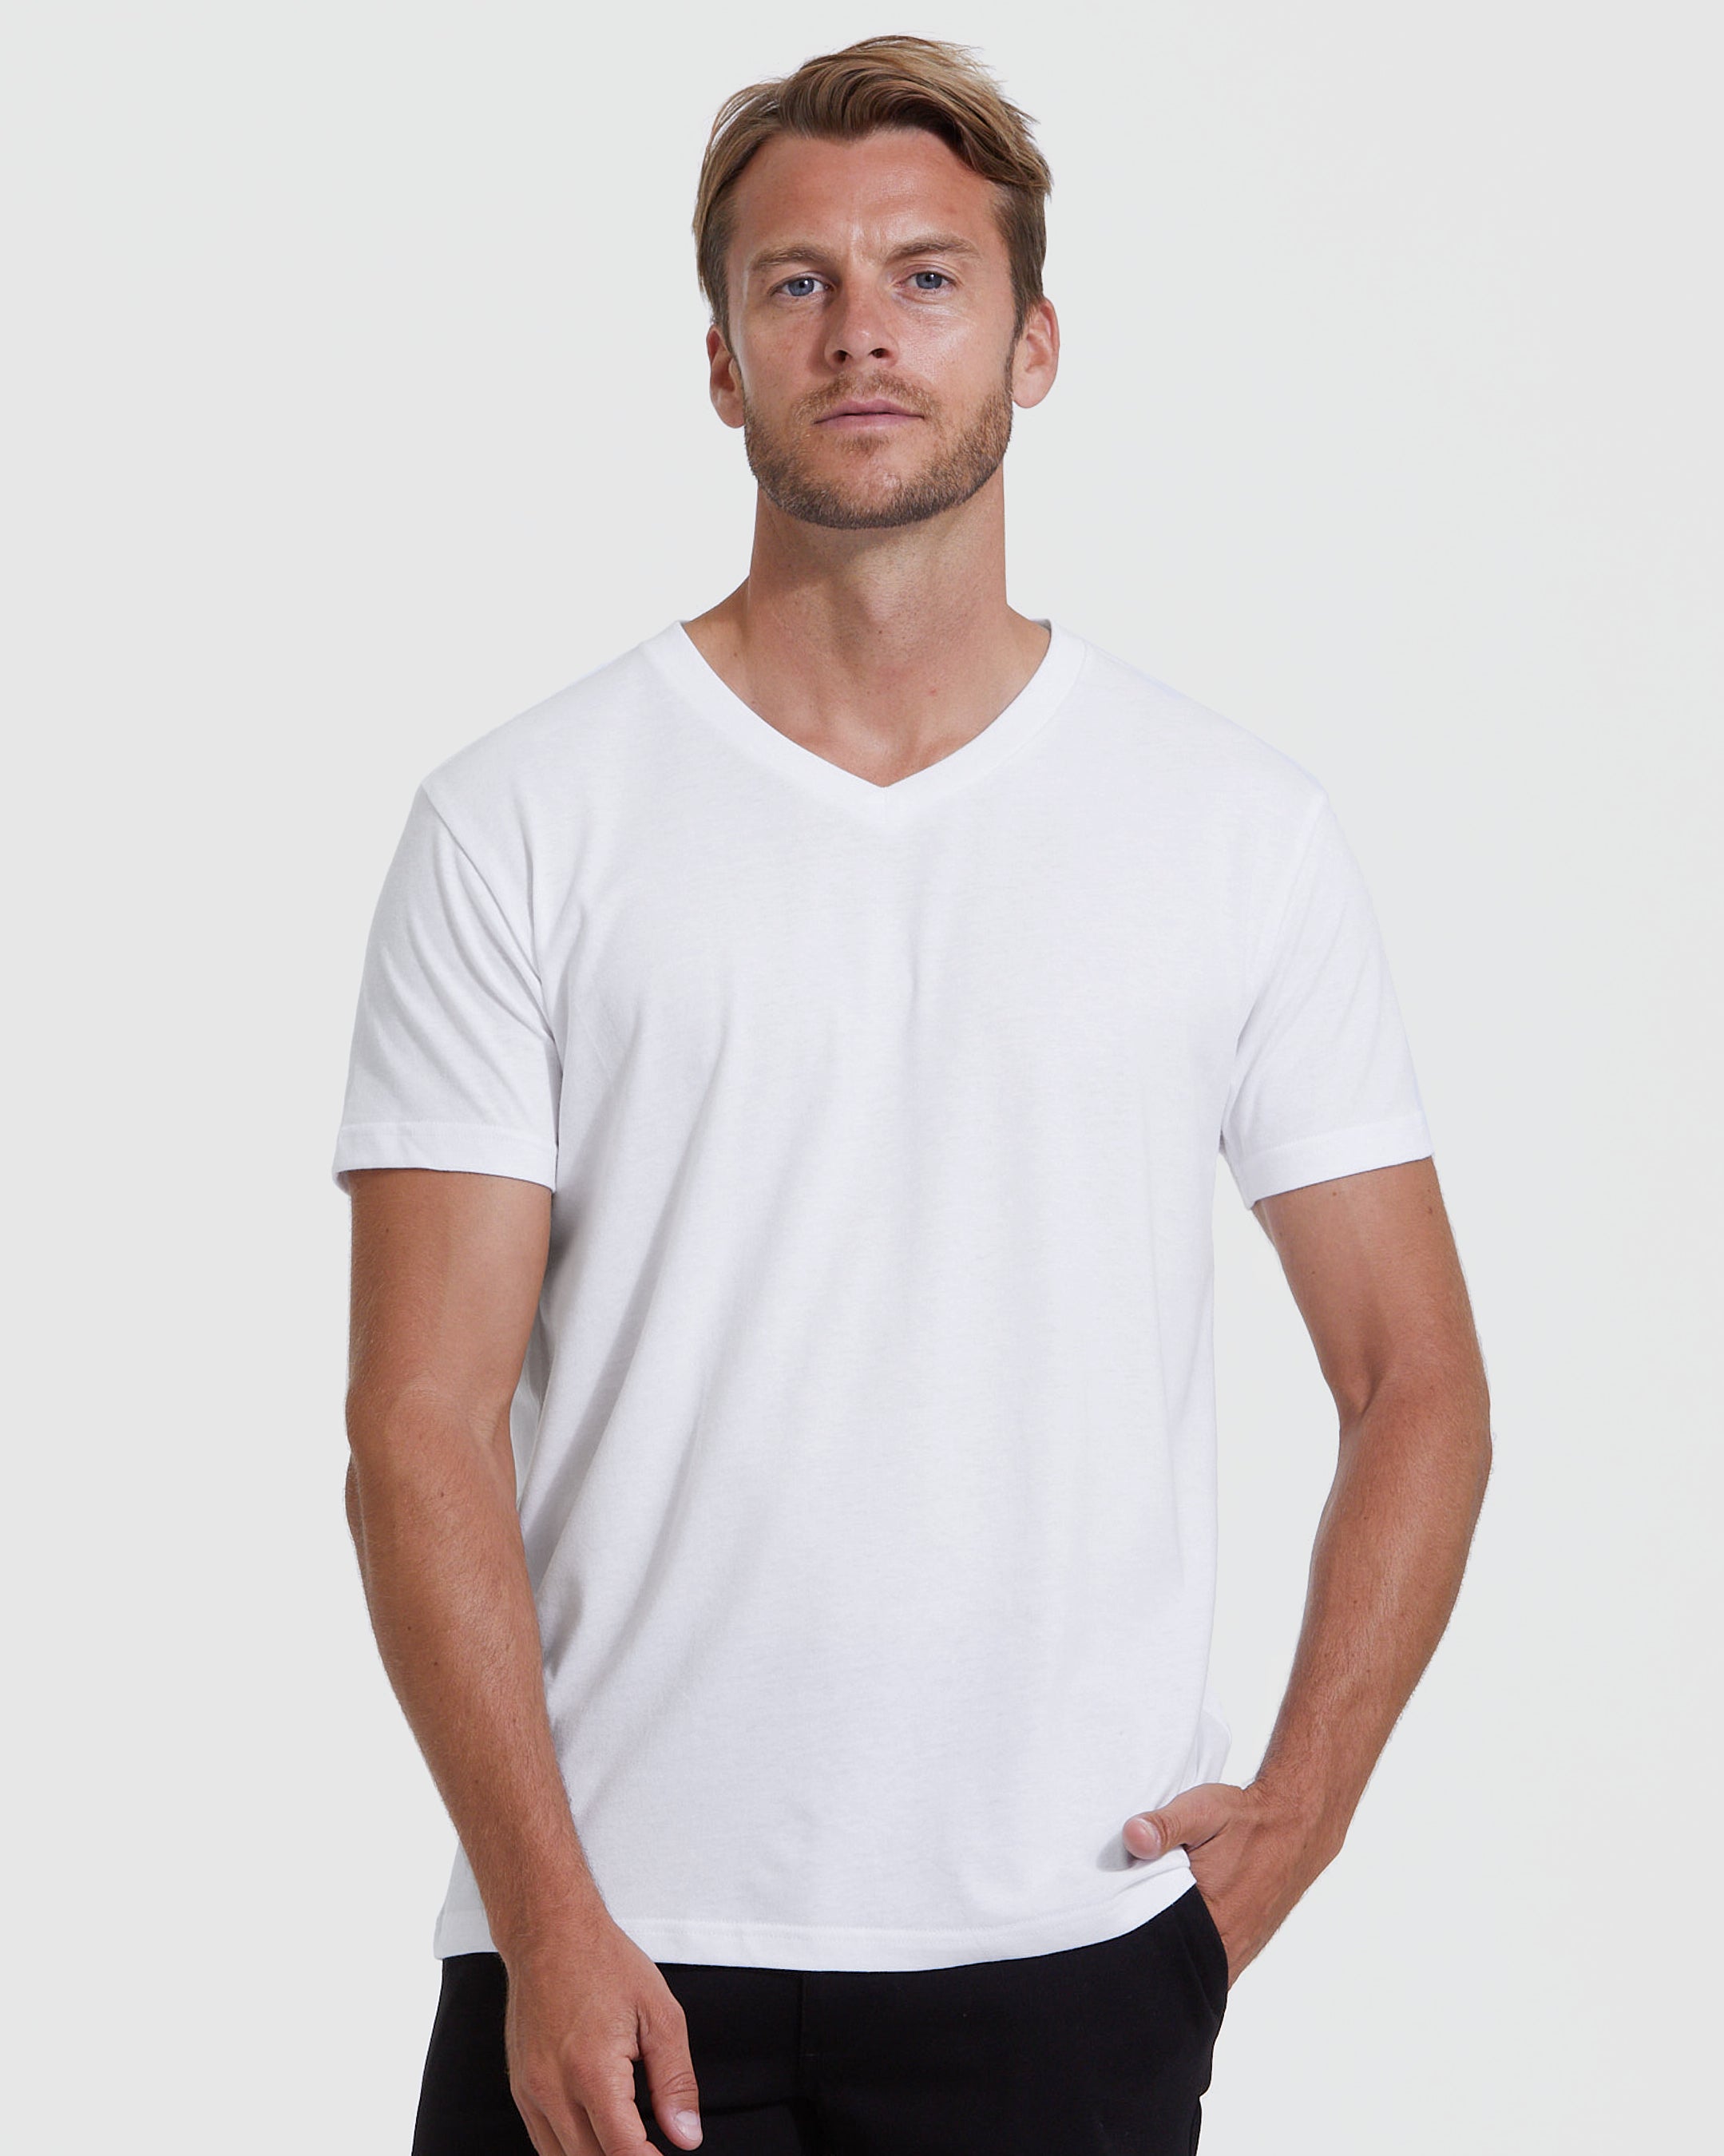 White V-Neck T-Shirt | Men\'s White V-Neck Shirt | True Classic